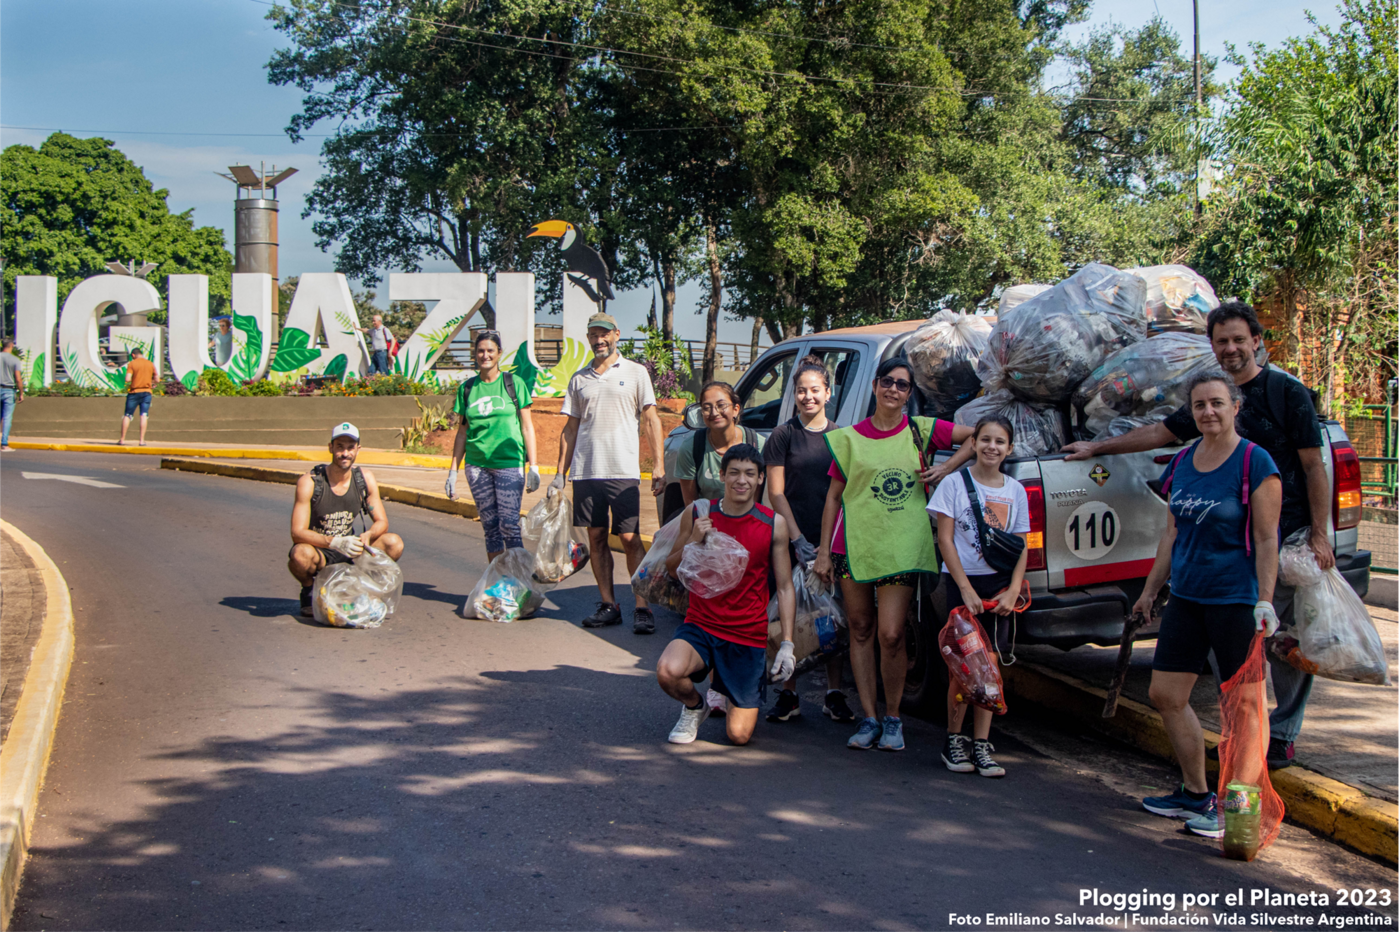 Este sábado se realiza el “Plogging por el Planeta” en Iguazú